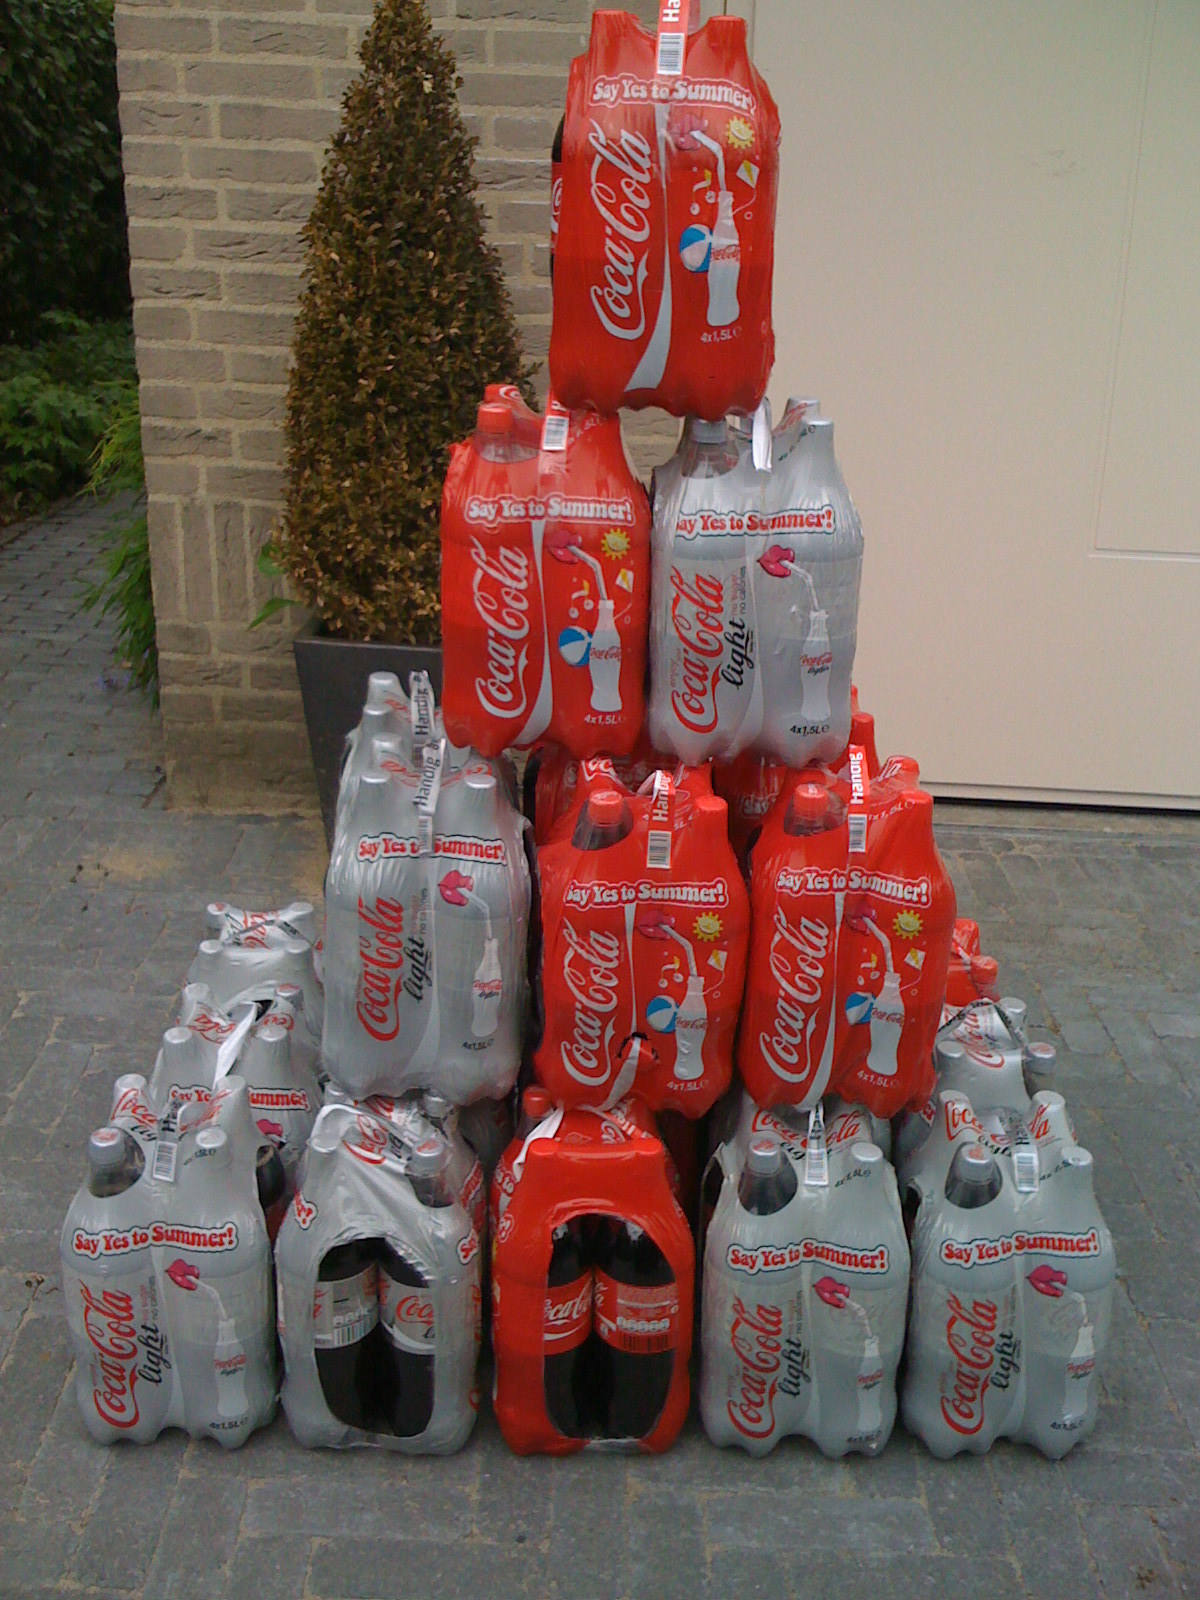 Gratis Coca Cola bij Albert Heijn